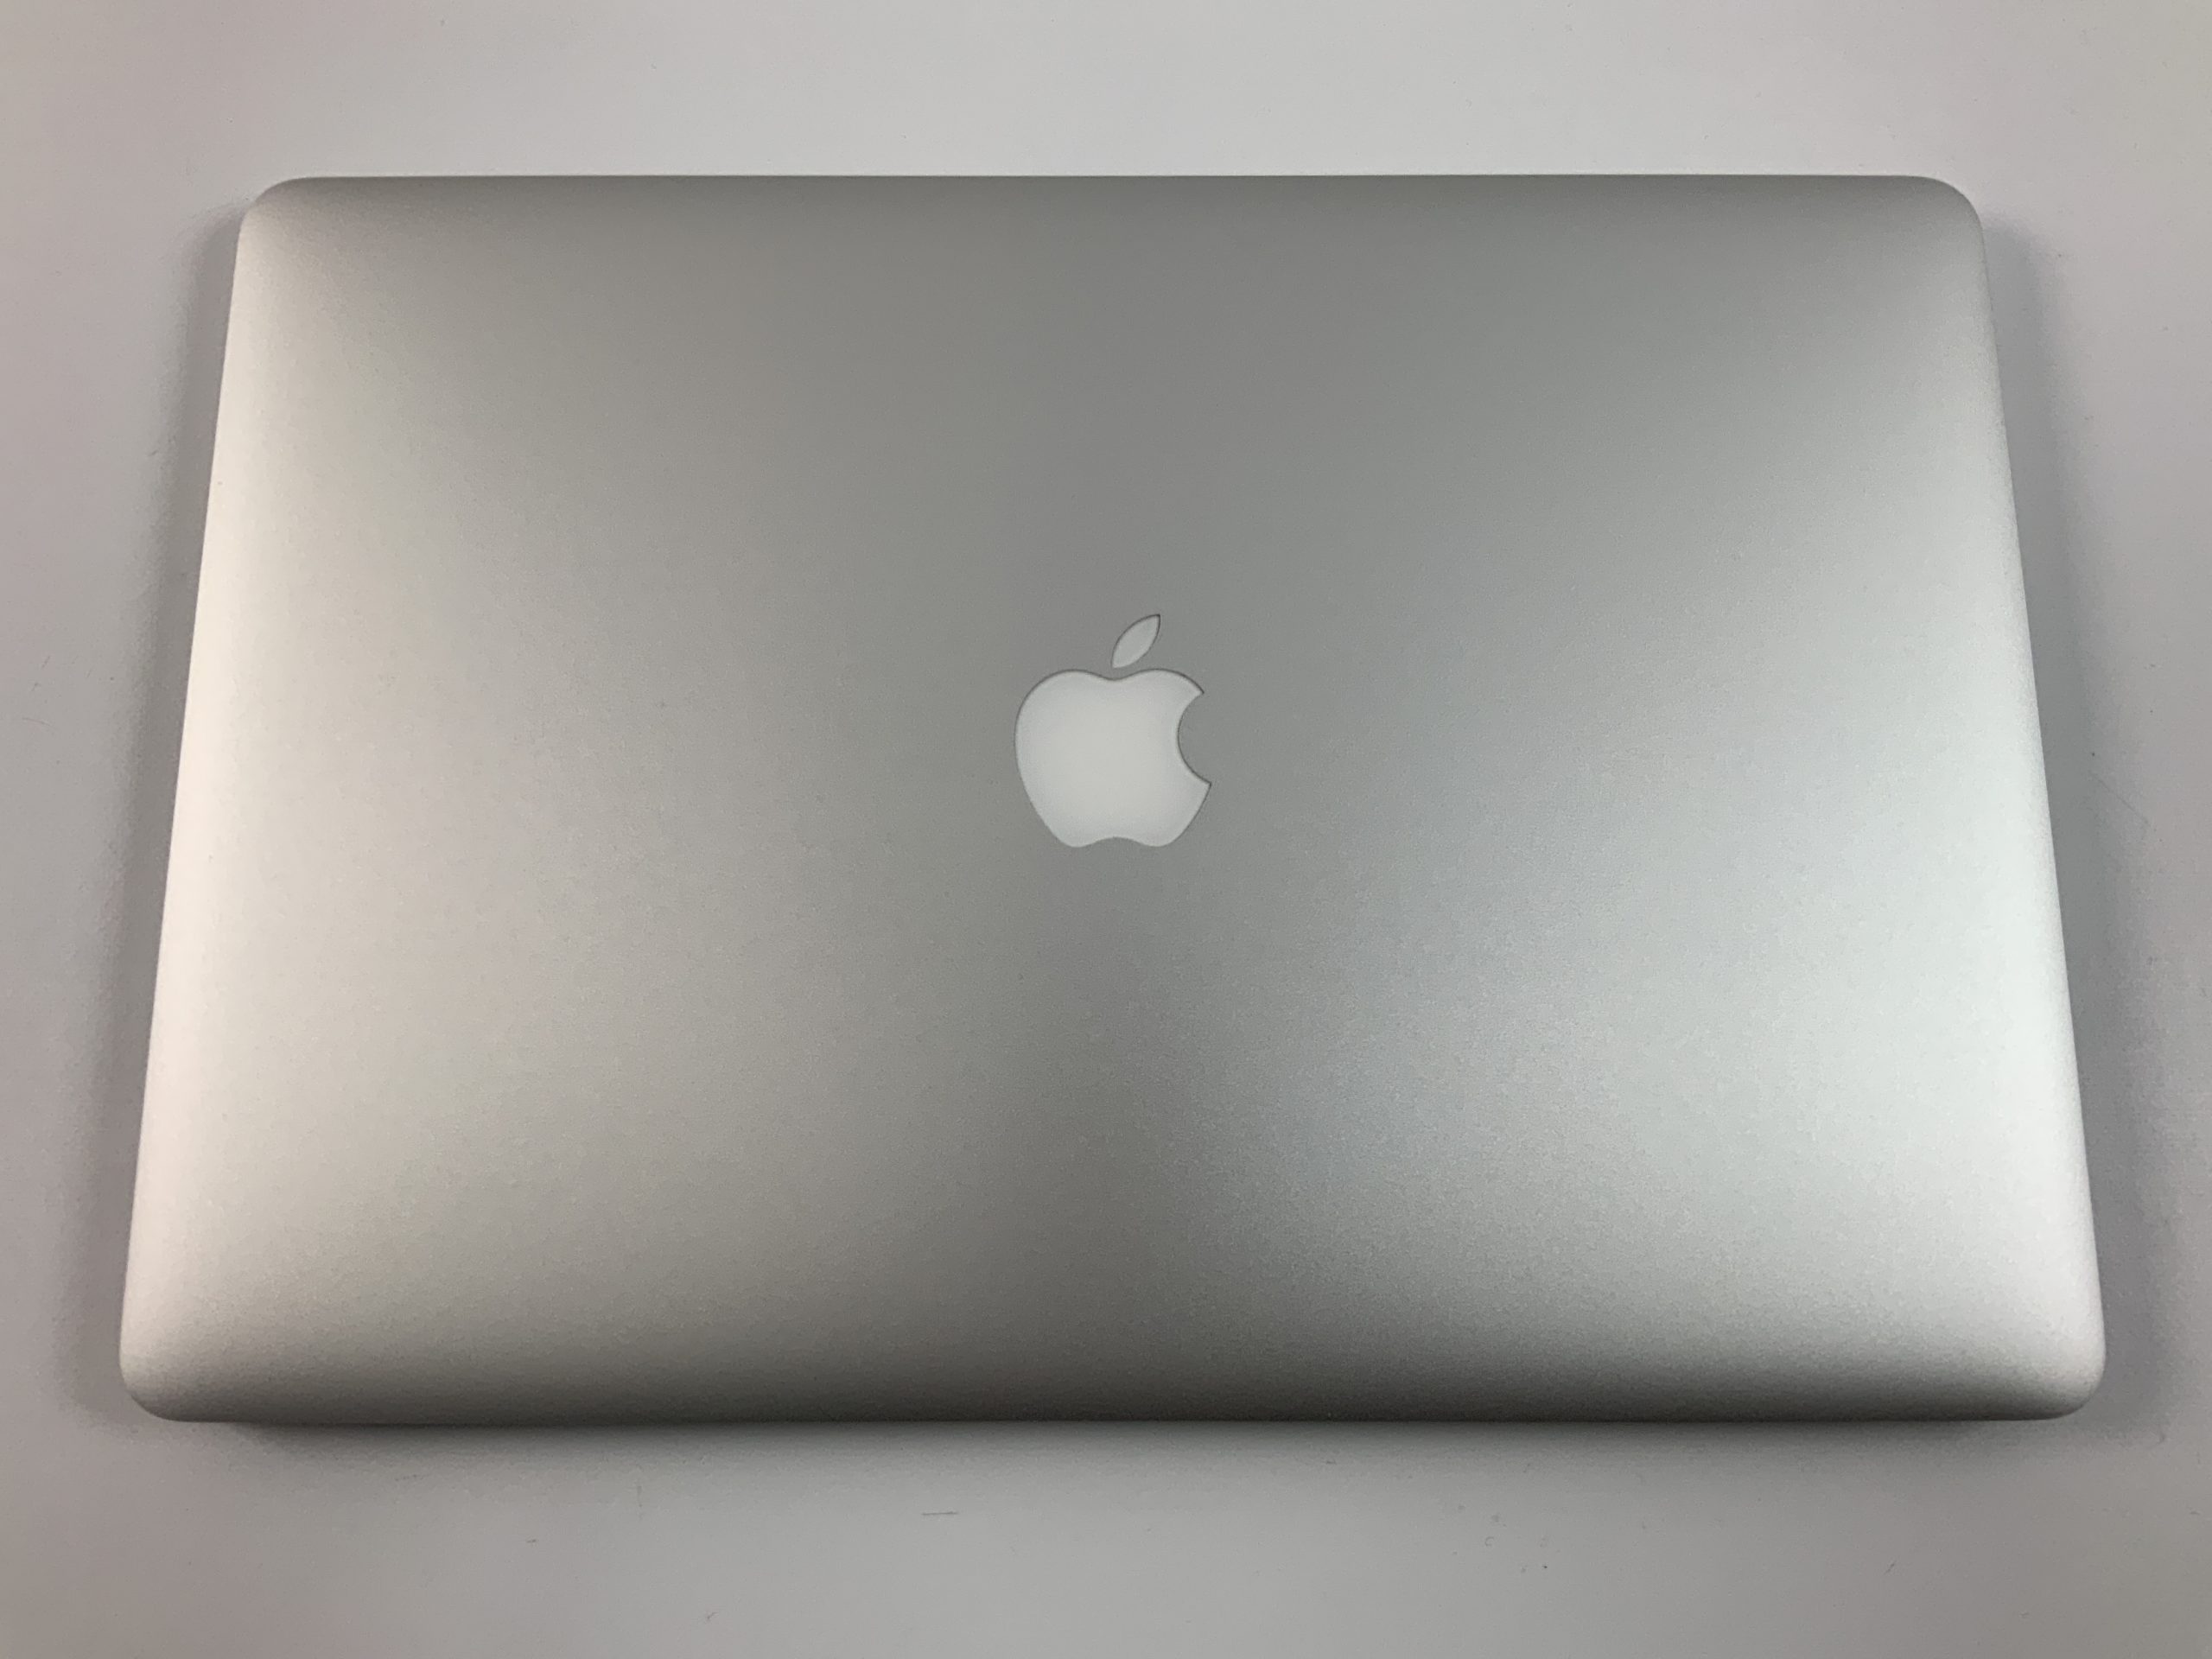 MacBook Pro Retina 15" Mid 2015 (Intel Quad-Core i7 2.8 GHz 16 GB RAM 512 GB SSD), Intel Quad-Core i7 2.8 GHz, 16 GB RAM, 512 GB SSD, Afbeelding 2